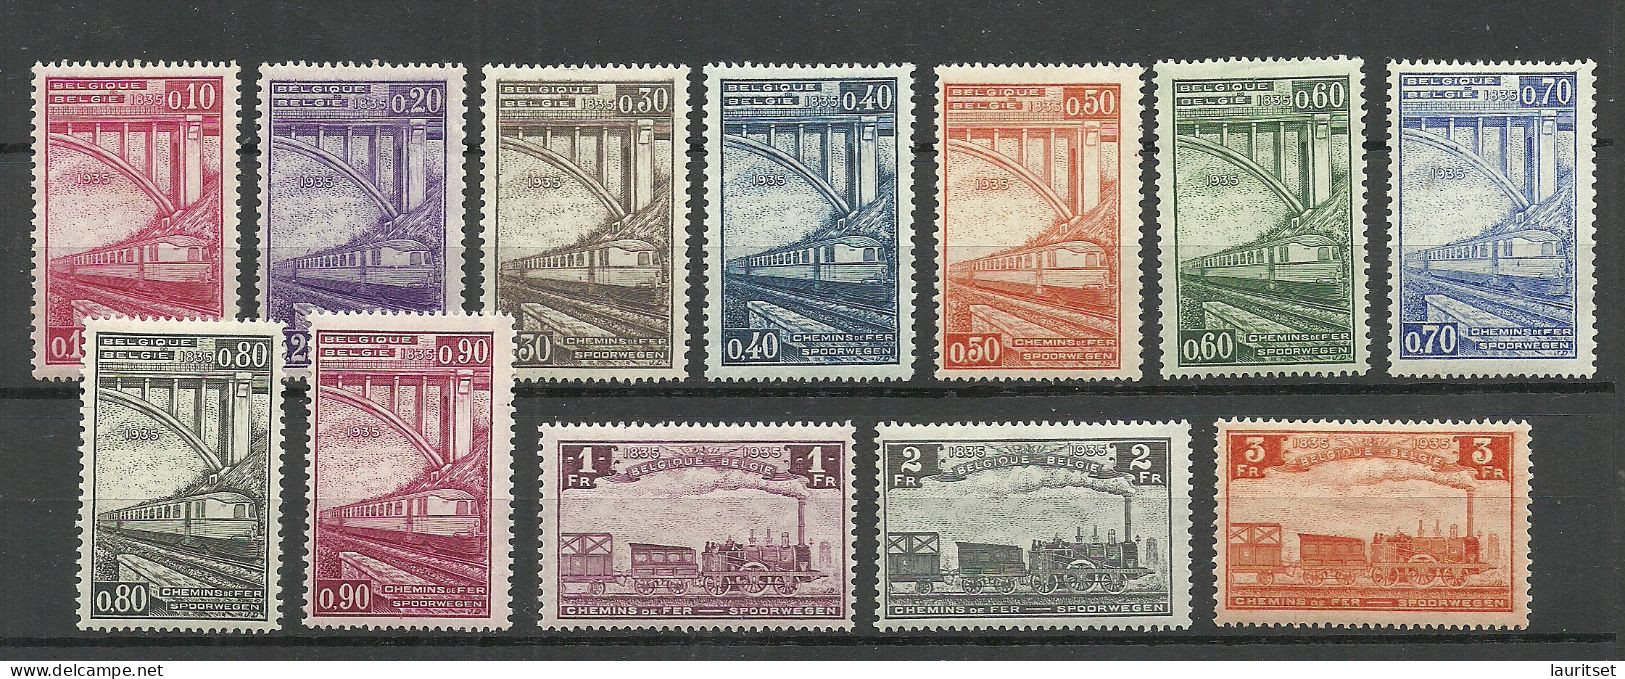 BELGIEN Belgium Belgique 1935 Michel 171 - 182 Eisenbahnpaketmarken Railway Packet Stamps * - Nuevos